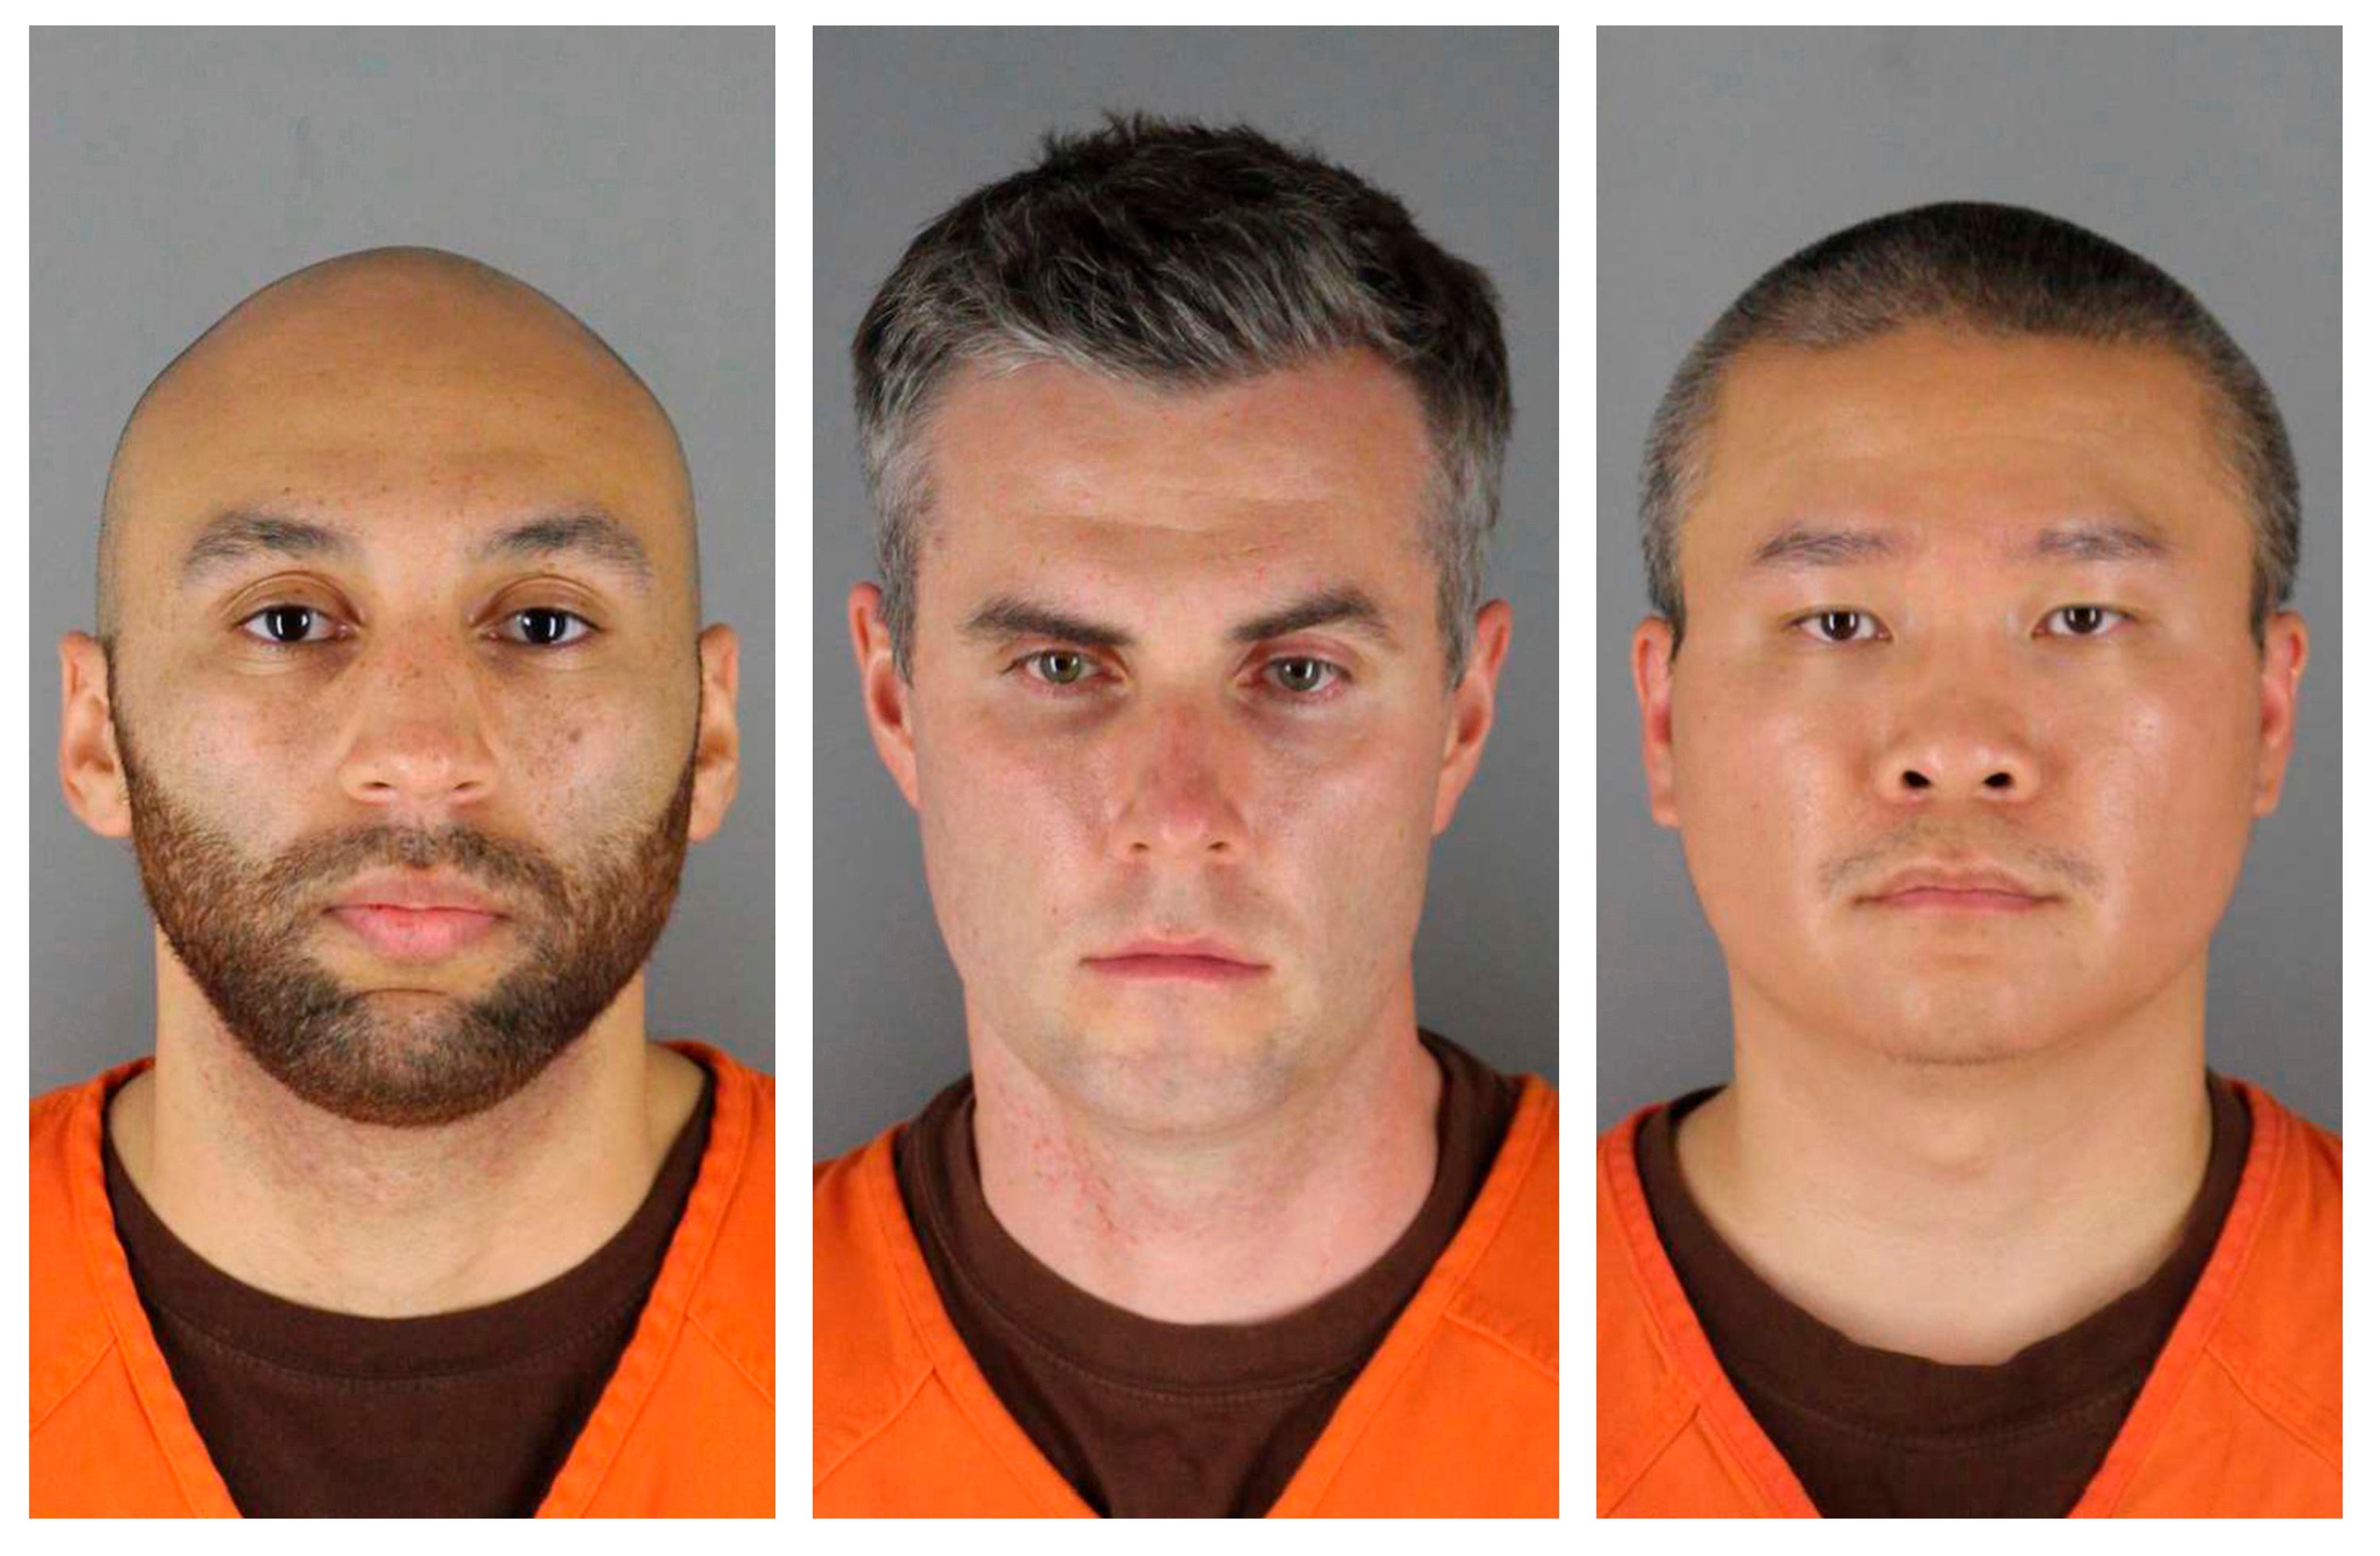 De izquierda a derecha: J. Alexander Kueng, Thomas Lane y Tou Thao en fotografías de su procesamiento